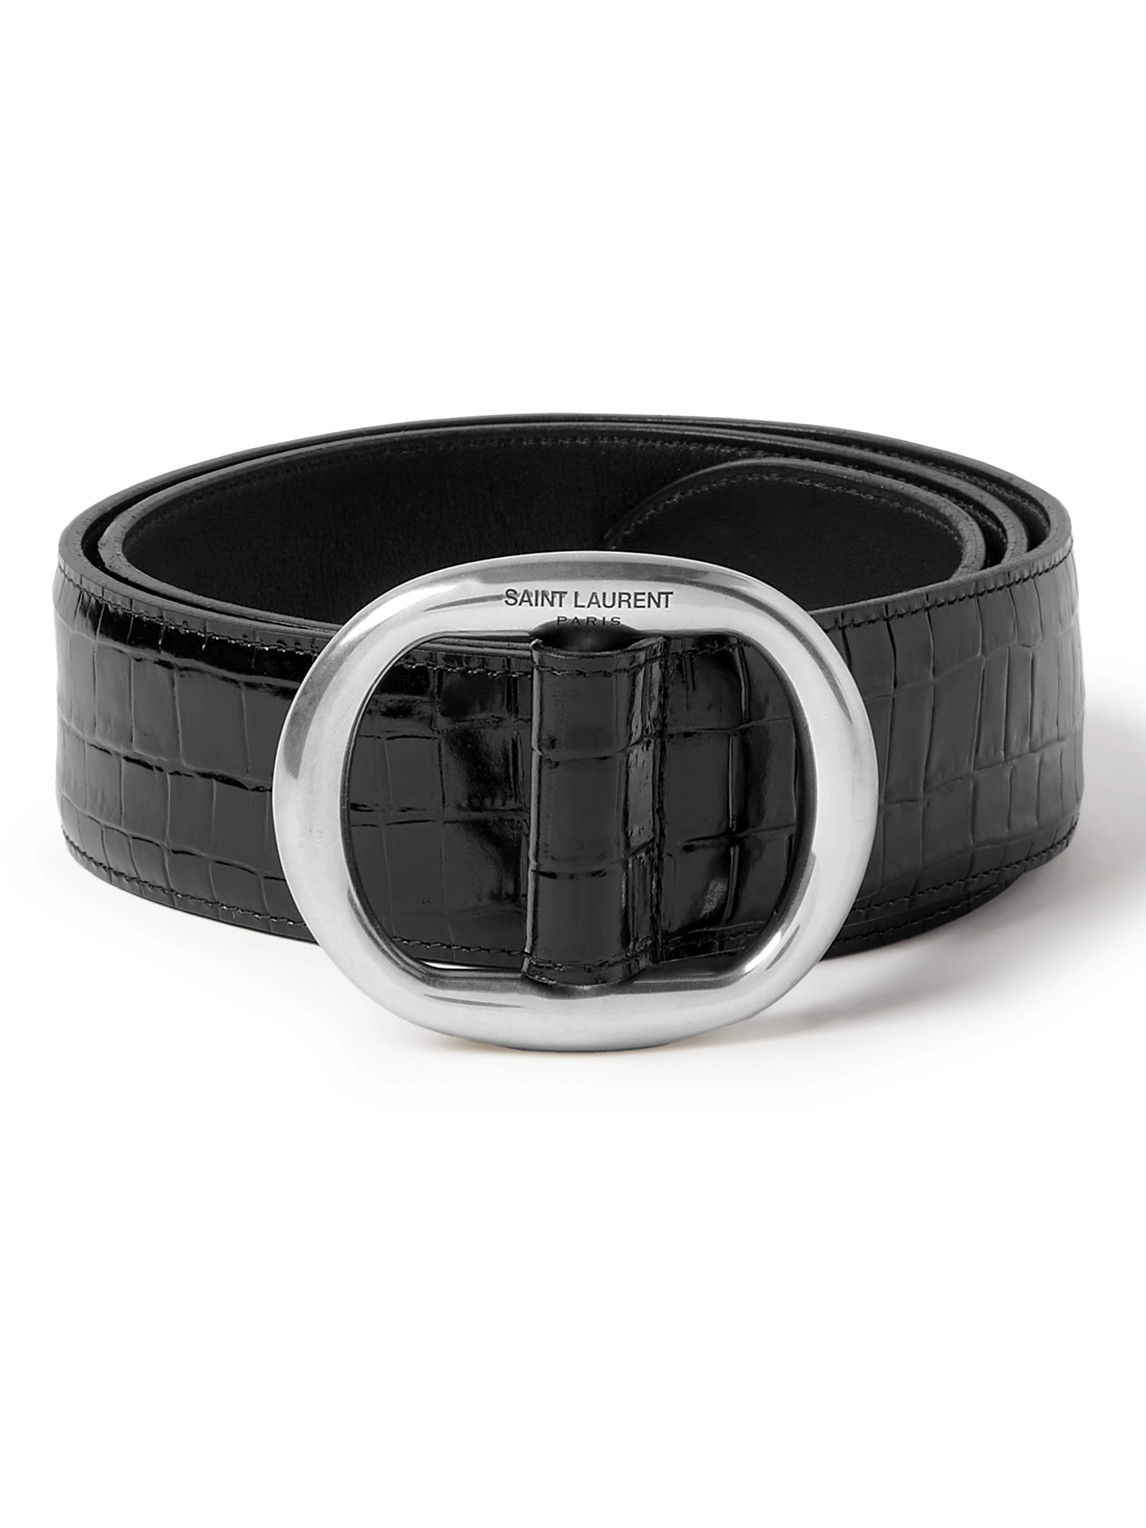 Saint Laurent 4cm Croc-effect Patent-leather Belt In Black